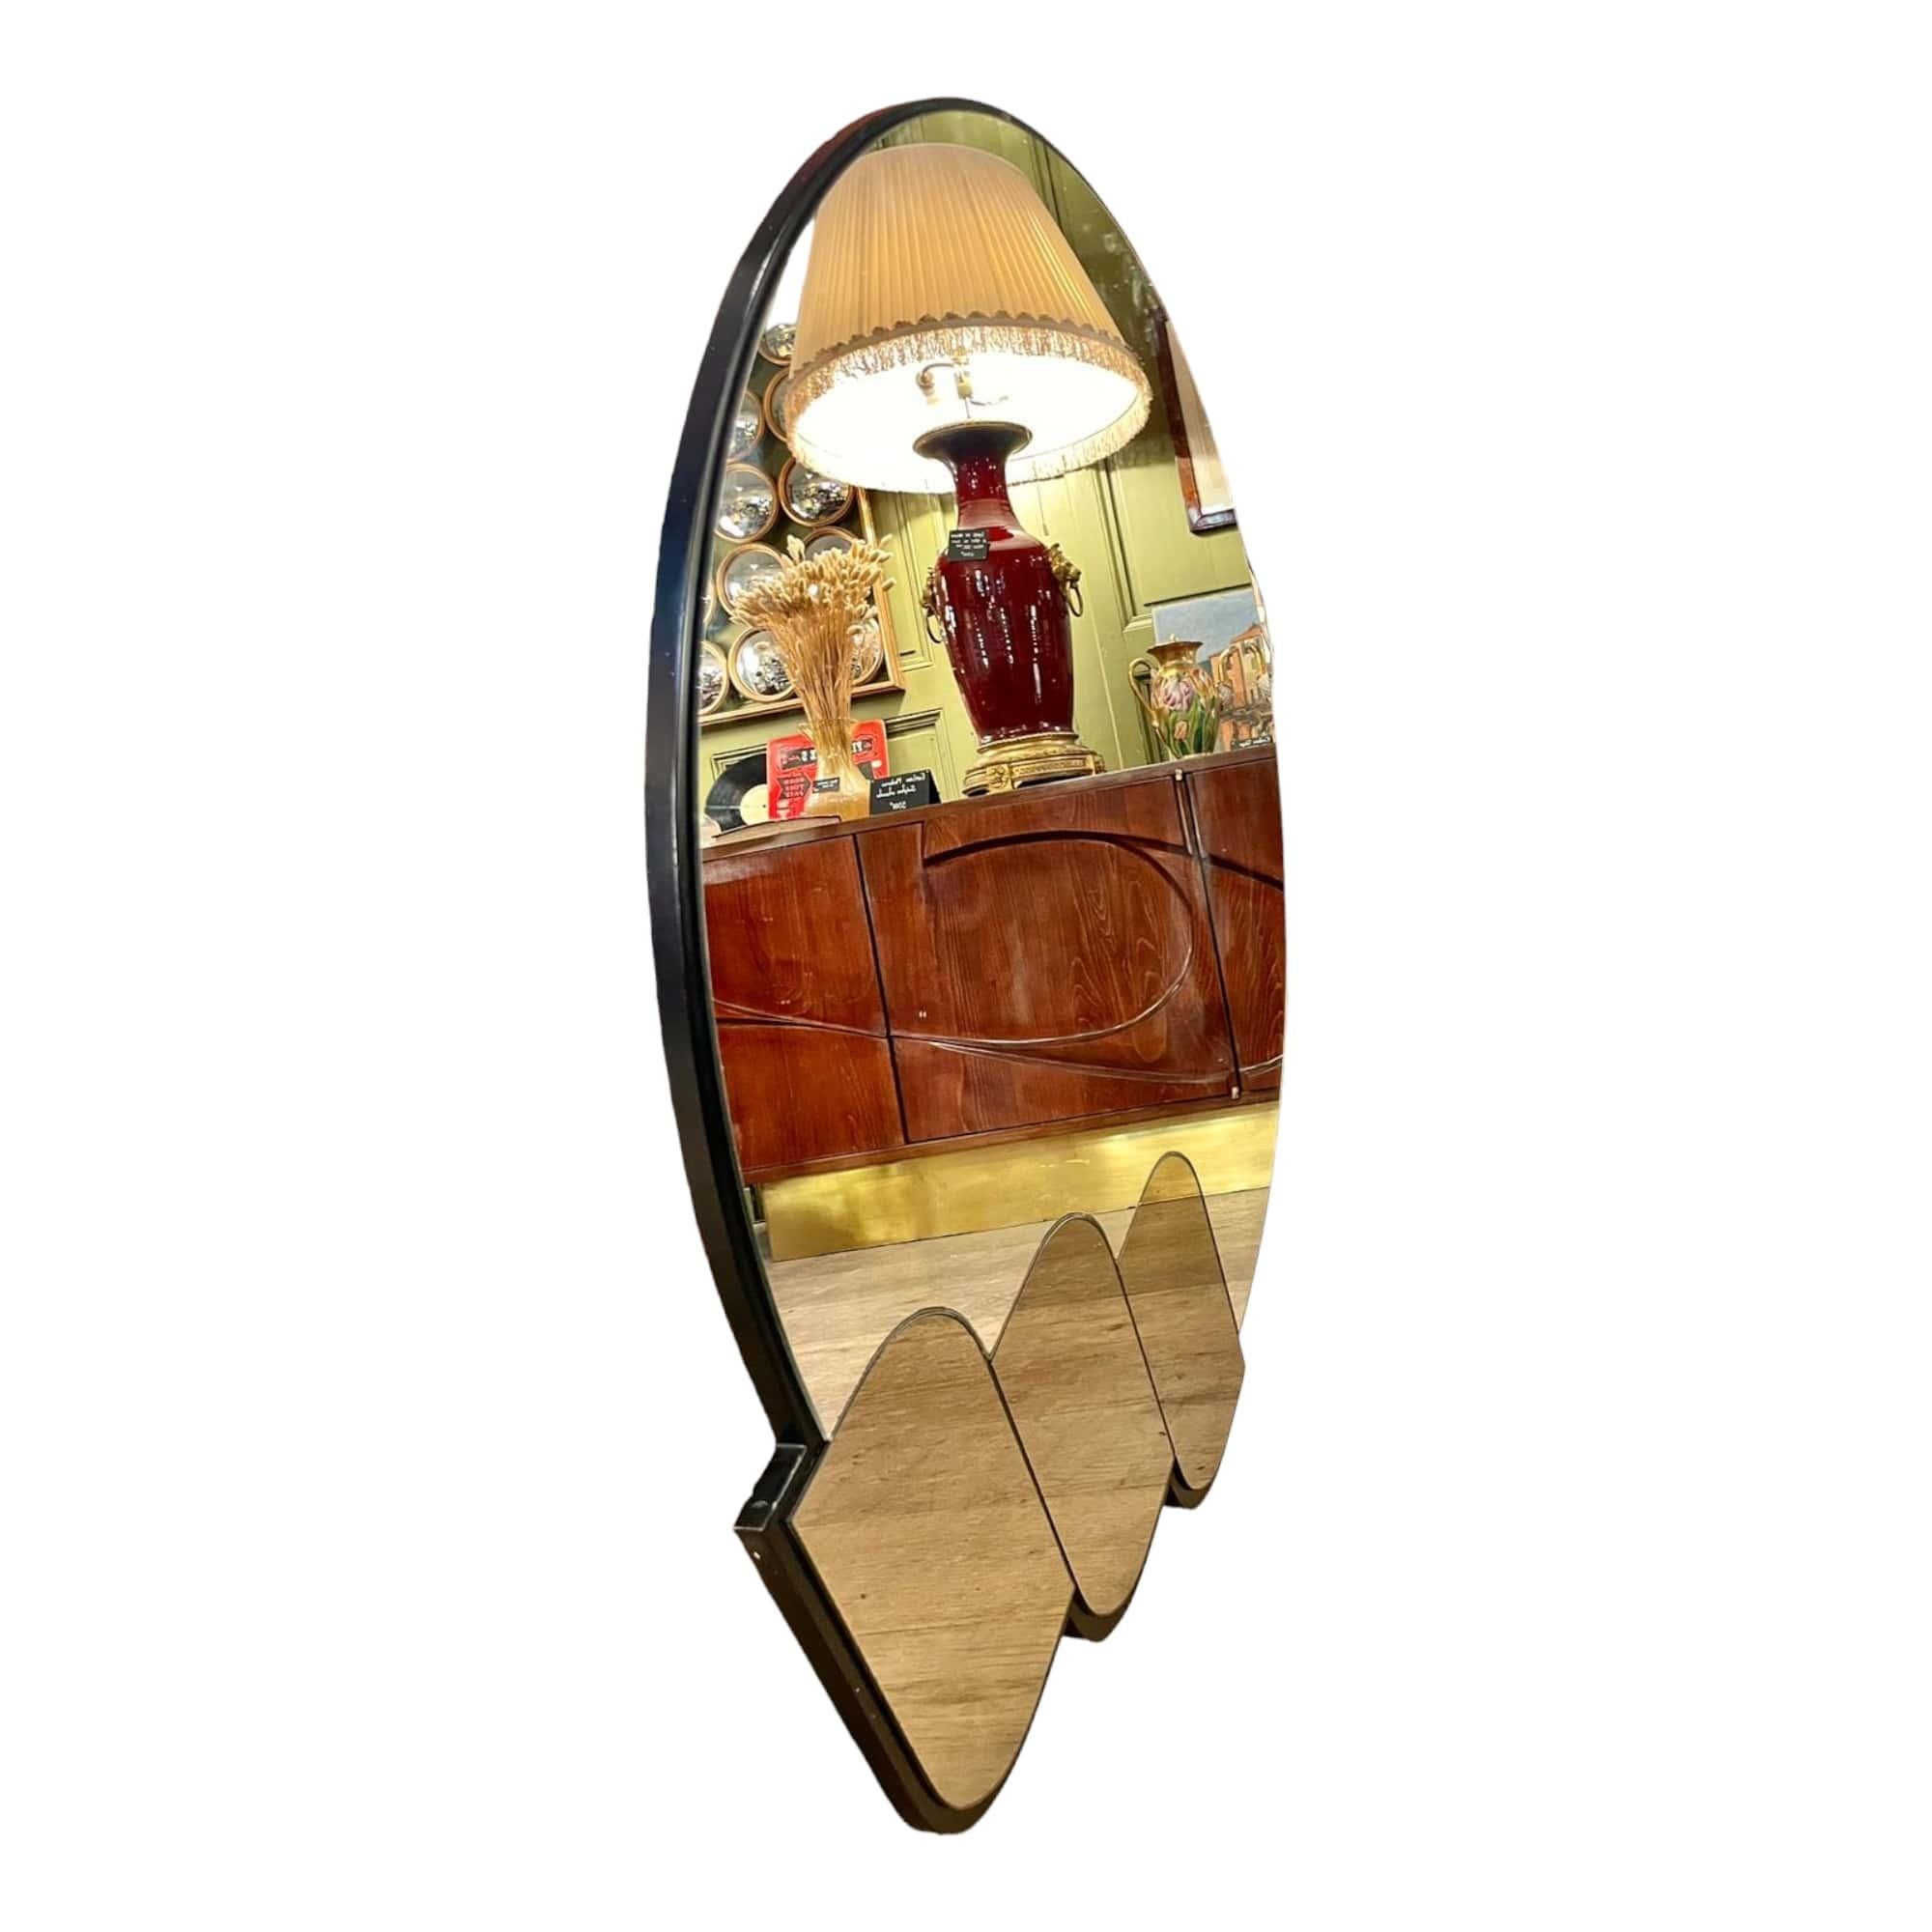 Dieser prächtige Retro-Spiegel aus den 80er Jahren ist ein echtes Stück französischer Antiquität aus dem Jahr 1980. Sein einzigartiges Design und sein Retro-Stil machen ihn zu einem außergewöhnlichen Dekorationsobjekt für jeden Raum des Hauses. Die